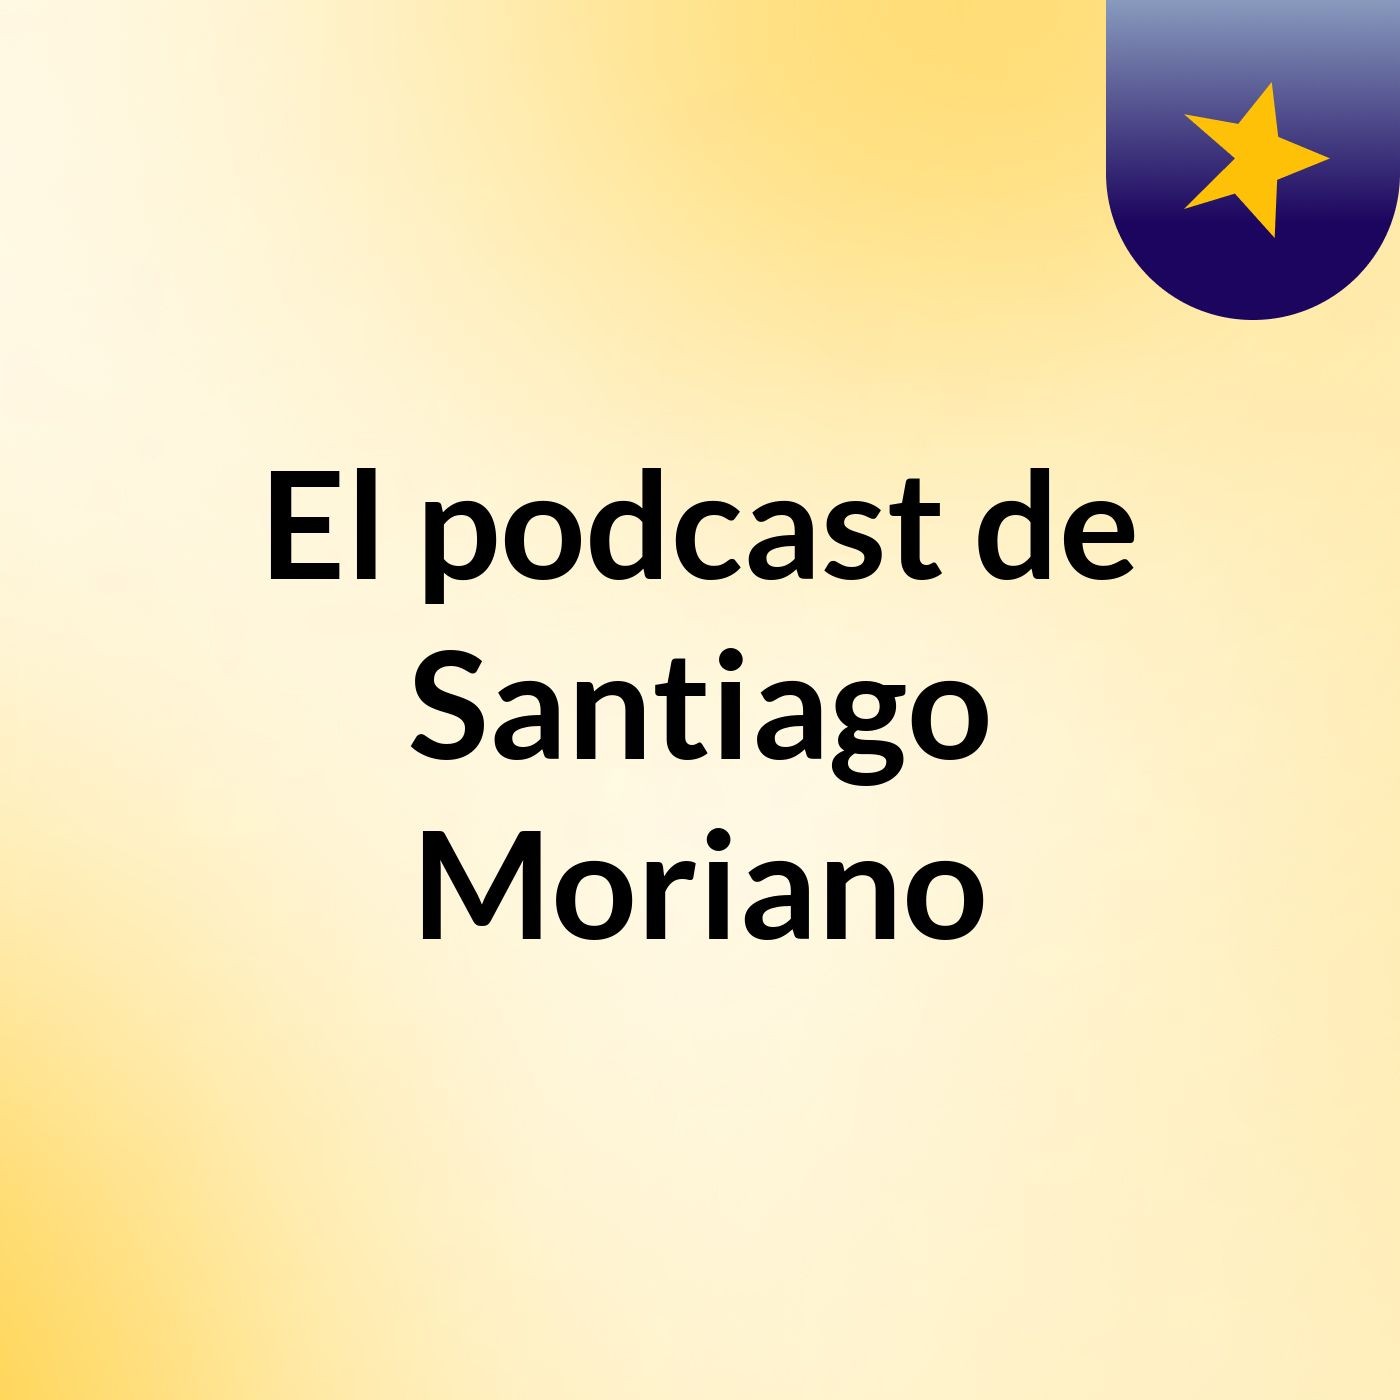 El podcast de Santiago Moriano